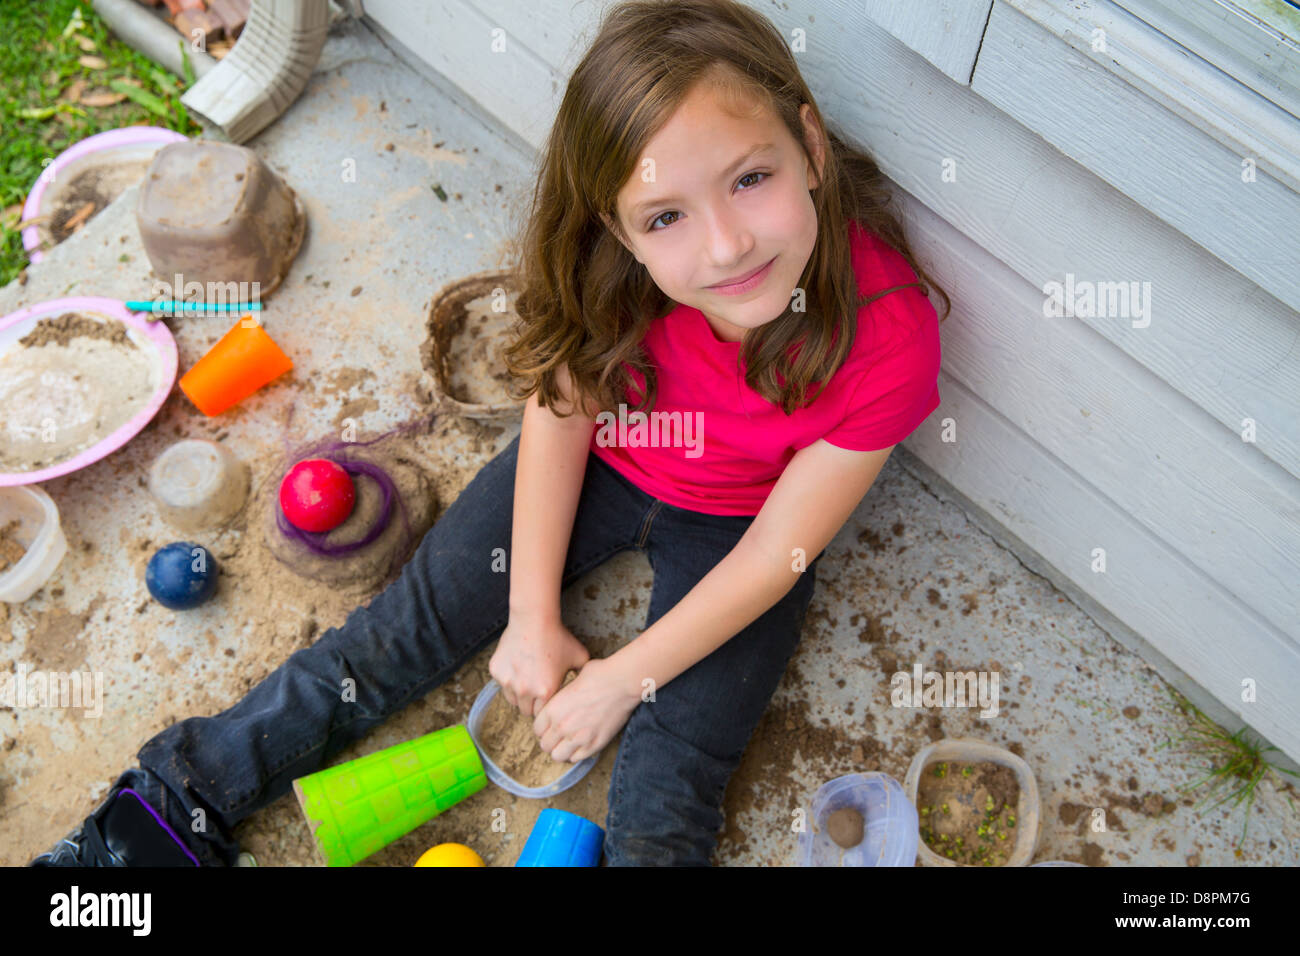 Fille jouant avec de la boue dans un sol malpropre smiling portrait je cherche de high point Banque D'Images